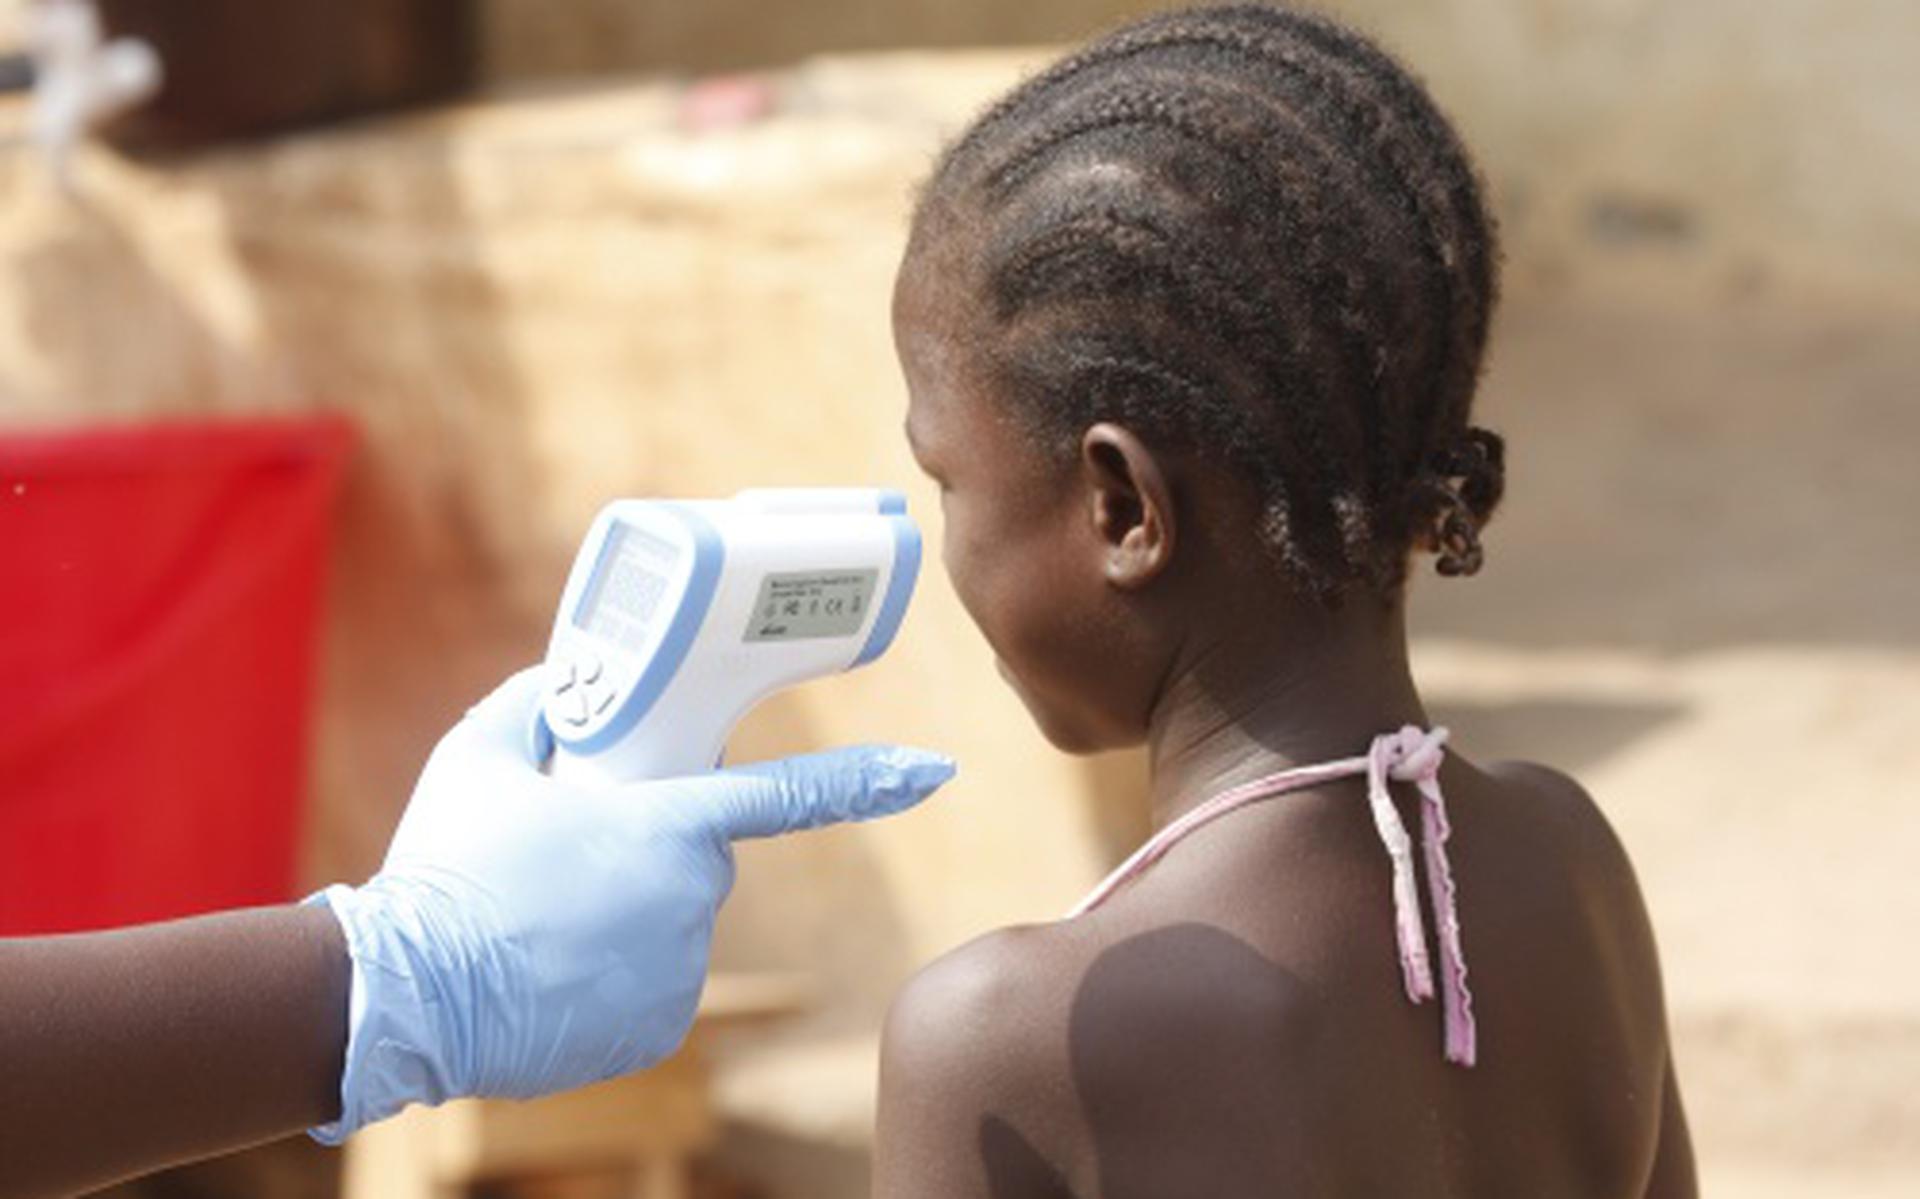 Ruim honderd mensen in quarantaine om ebola